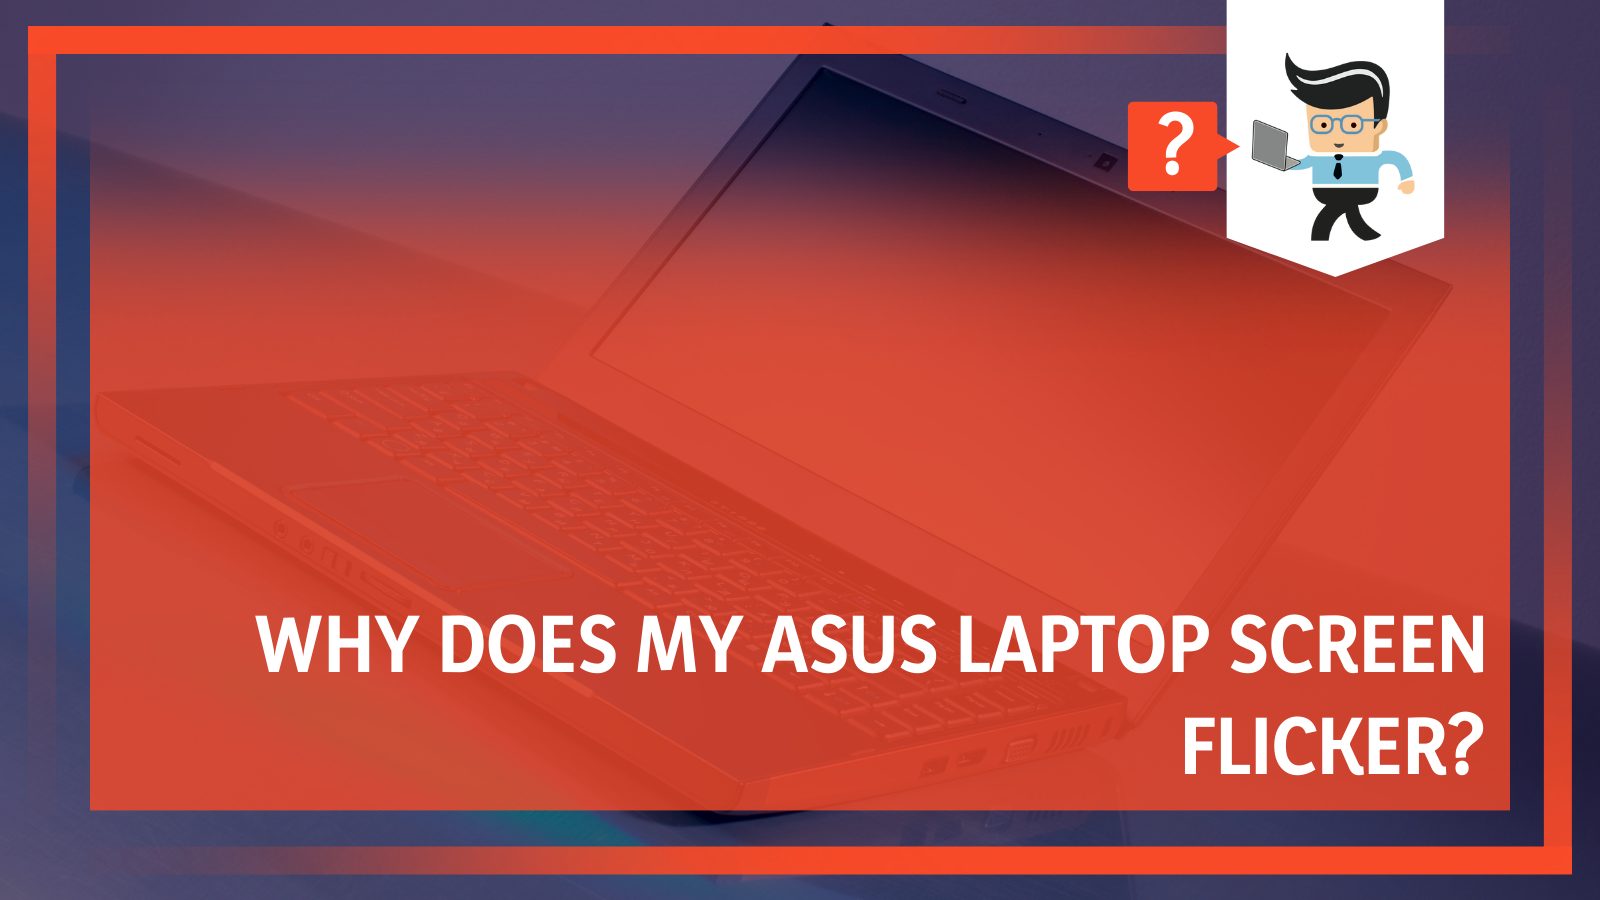 Asus Laptop Screen Flicker